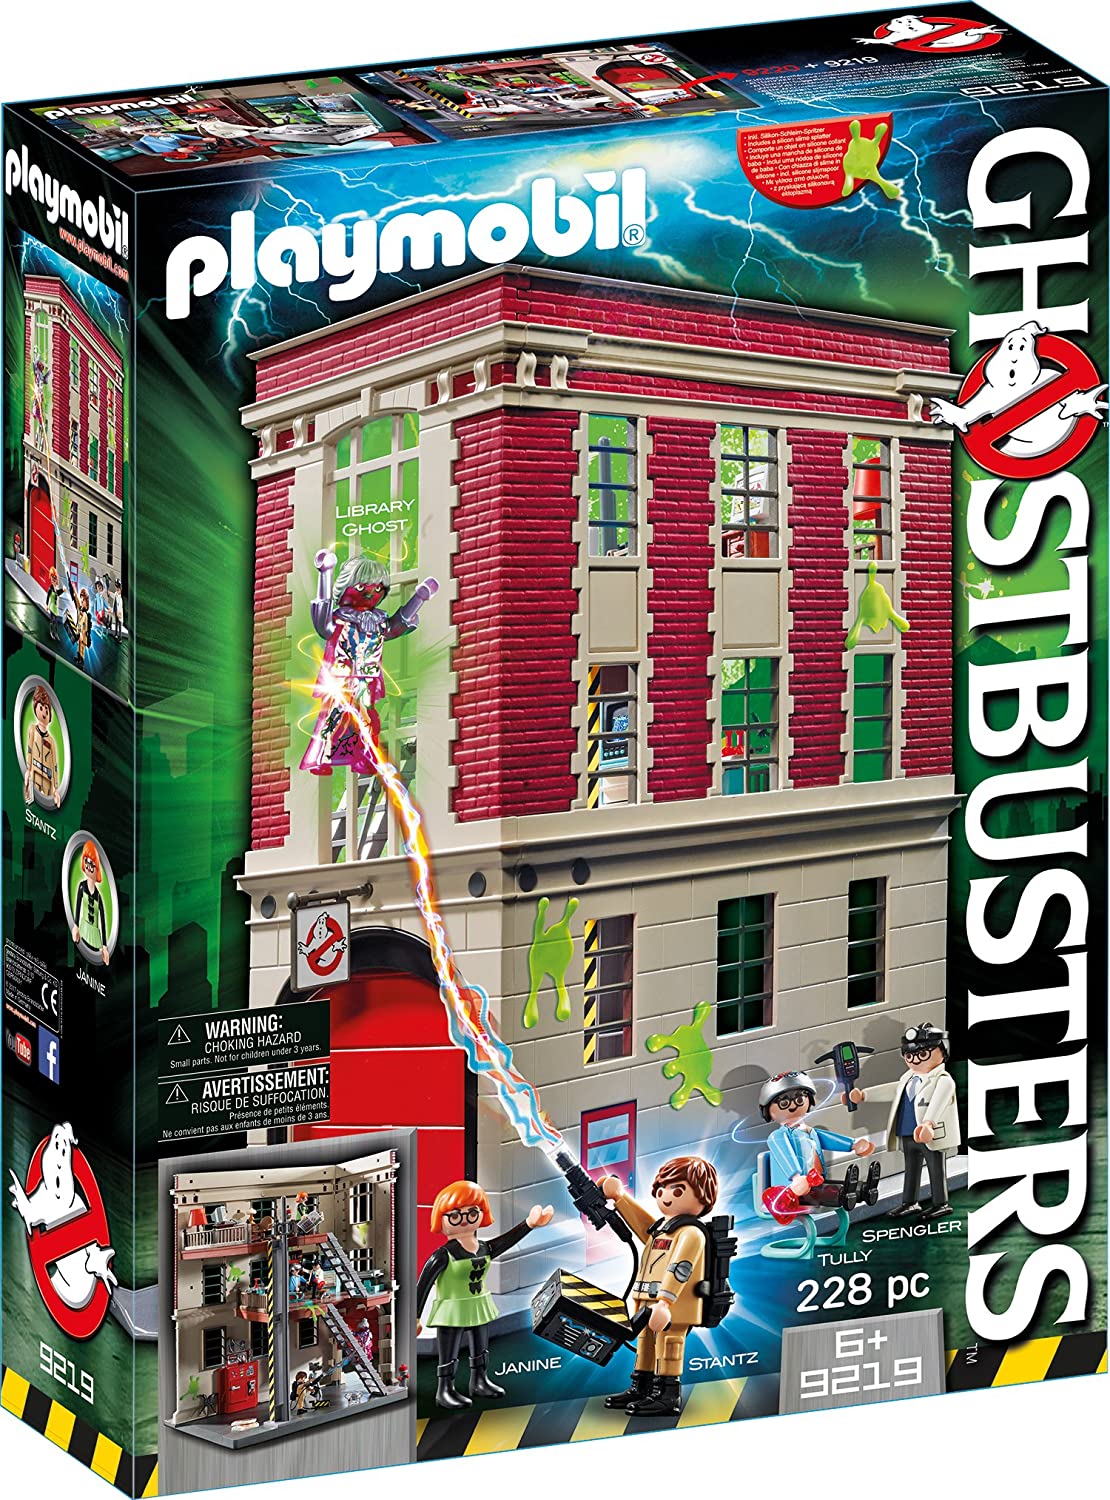 Bild zu Playmobil Ghostbusters Feuerwache (9219) für 46,99€ (Vergleich: 64,79€)